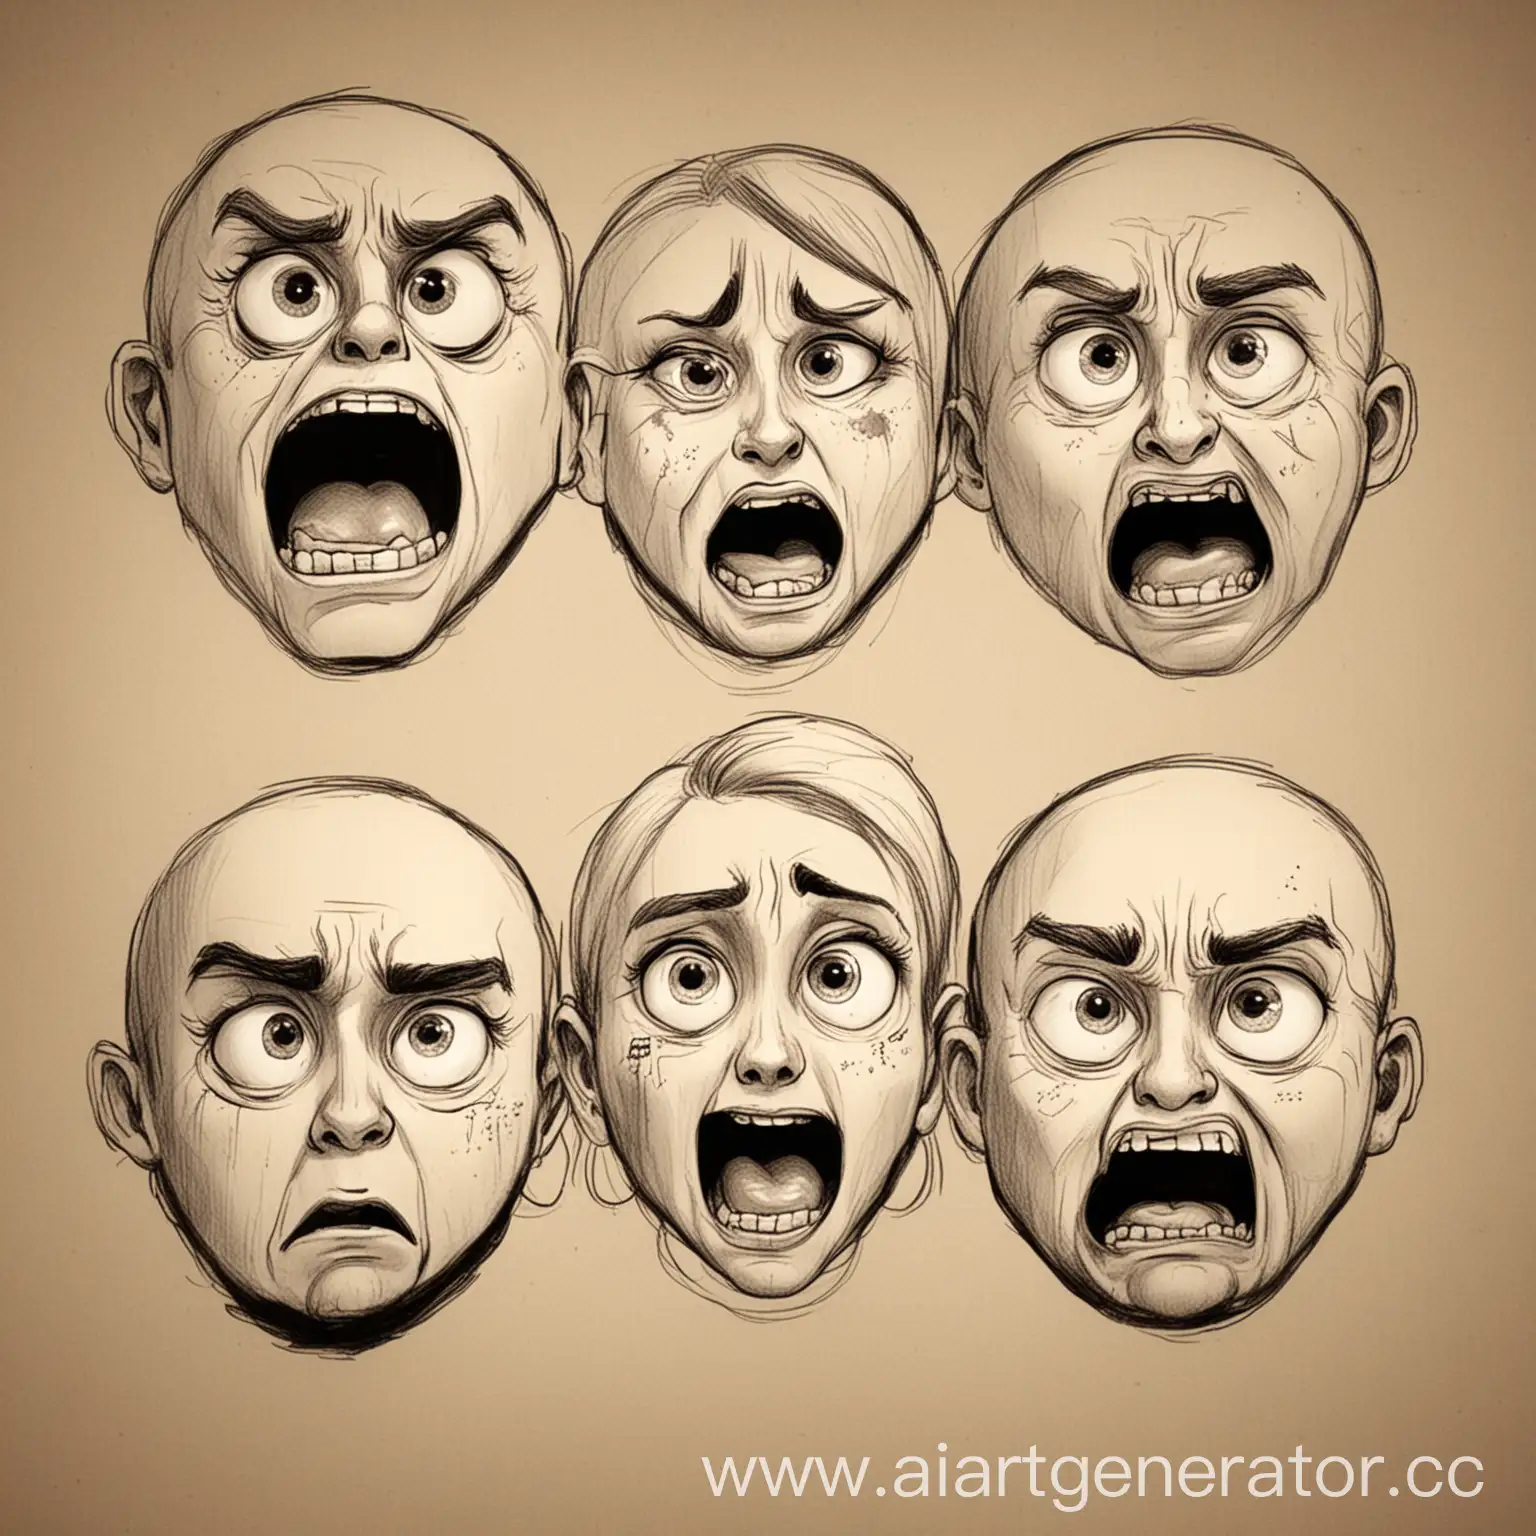 4 эмоции : наслаждение, злость, удивление, испуг
4 лица
разные стили рисовки
рисунок 
